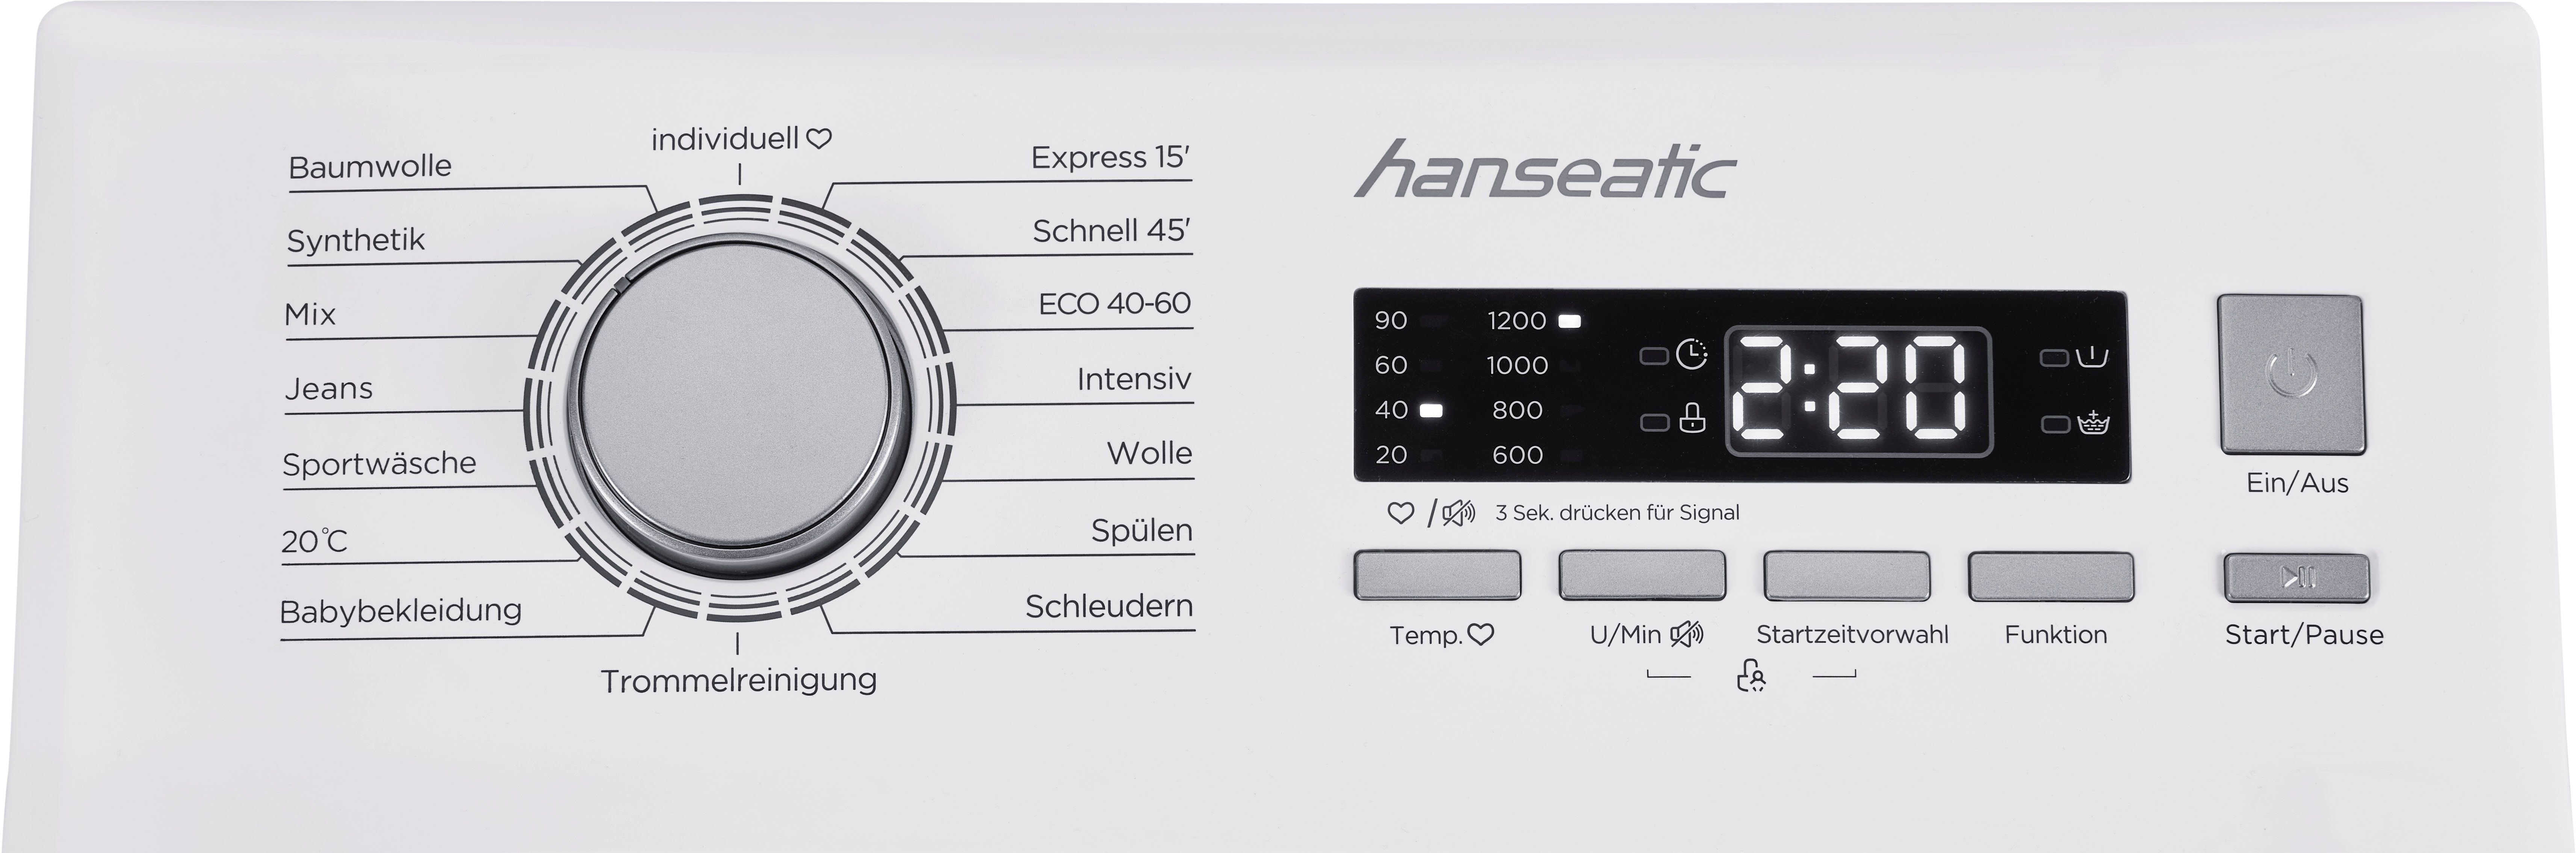 1200 Hanseatic Mengenautomatik, Überlaufschutzsystem, 7,5 Express kg, Programm HTW7512C, Waschmaschine U/min, Toplader